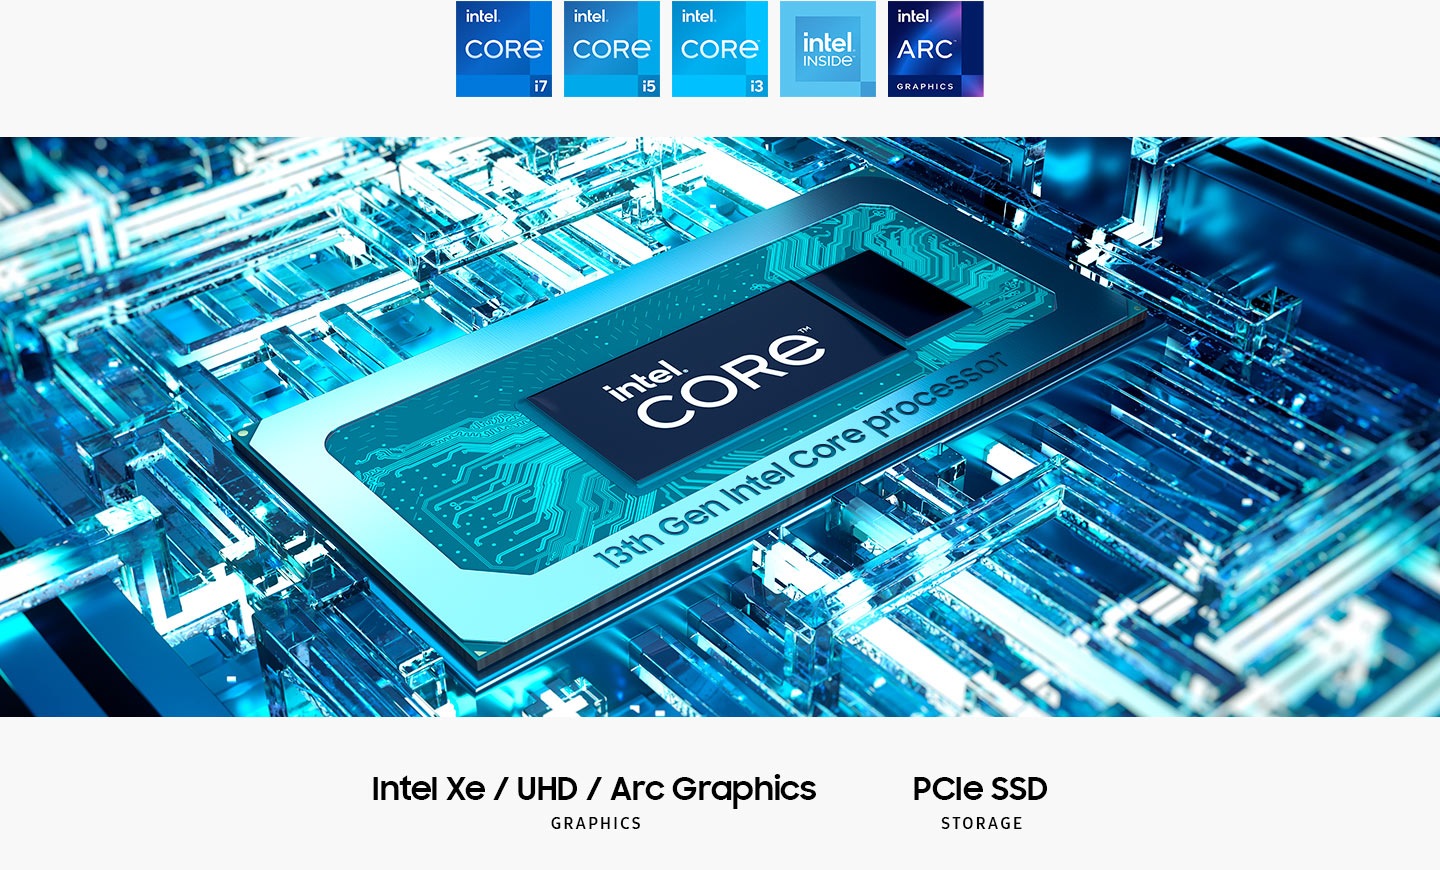 Pemproses Intel® Core ™ ke -13 berada di papan induk dengan teks Intel® Core ™ di tengah. Intel XE / UHD / ARC grafik. Penyimpanan SSD PCIe. Logo Intel Core i7, Intel Core i5, Intel Core i3, Intel Inside dan Intel Arc Graphics dipaparkan